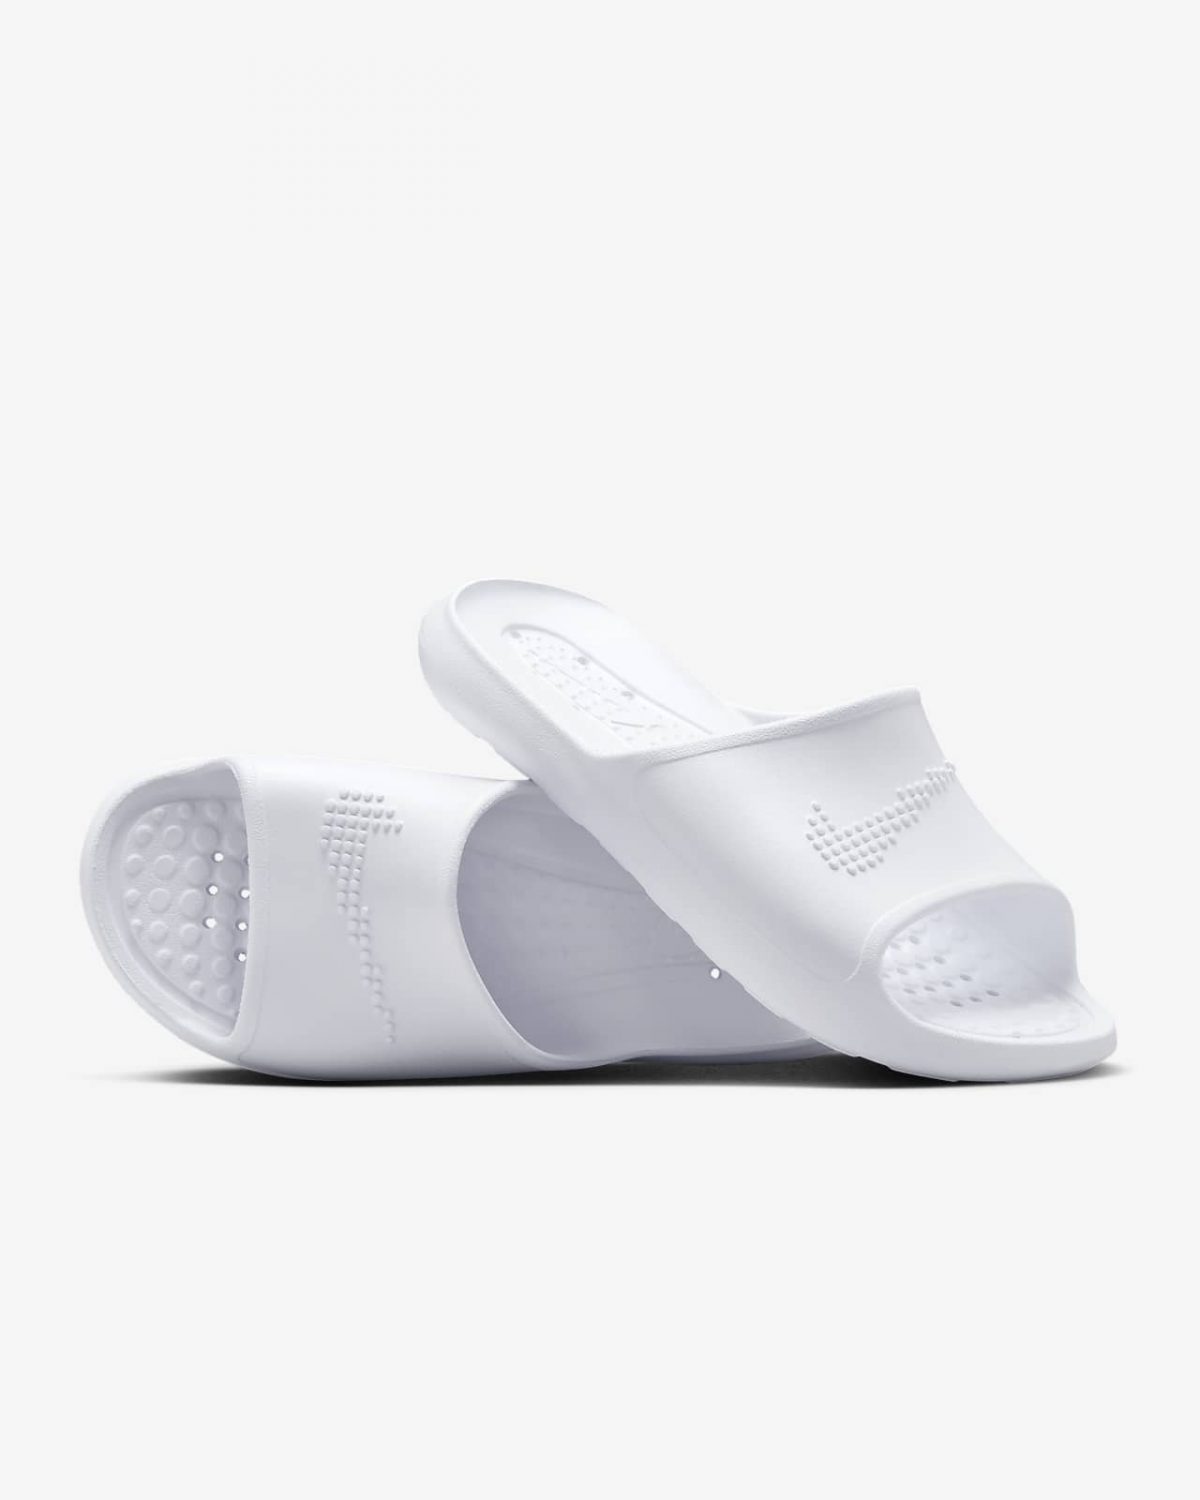 Женские сланцы Nike Victori One Shwer Slide белые фото